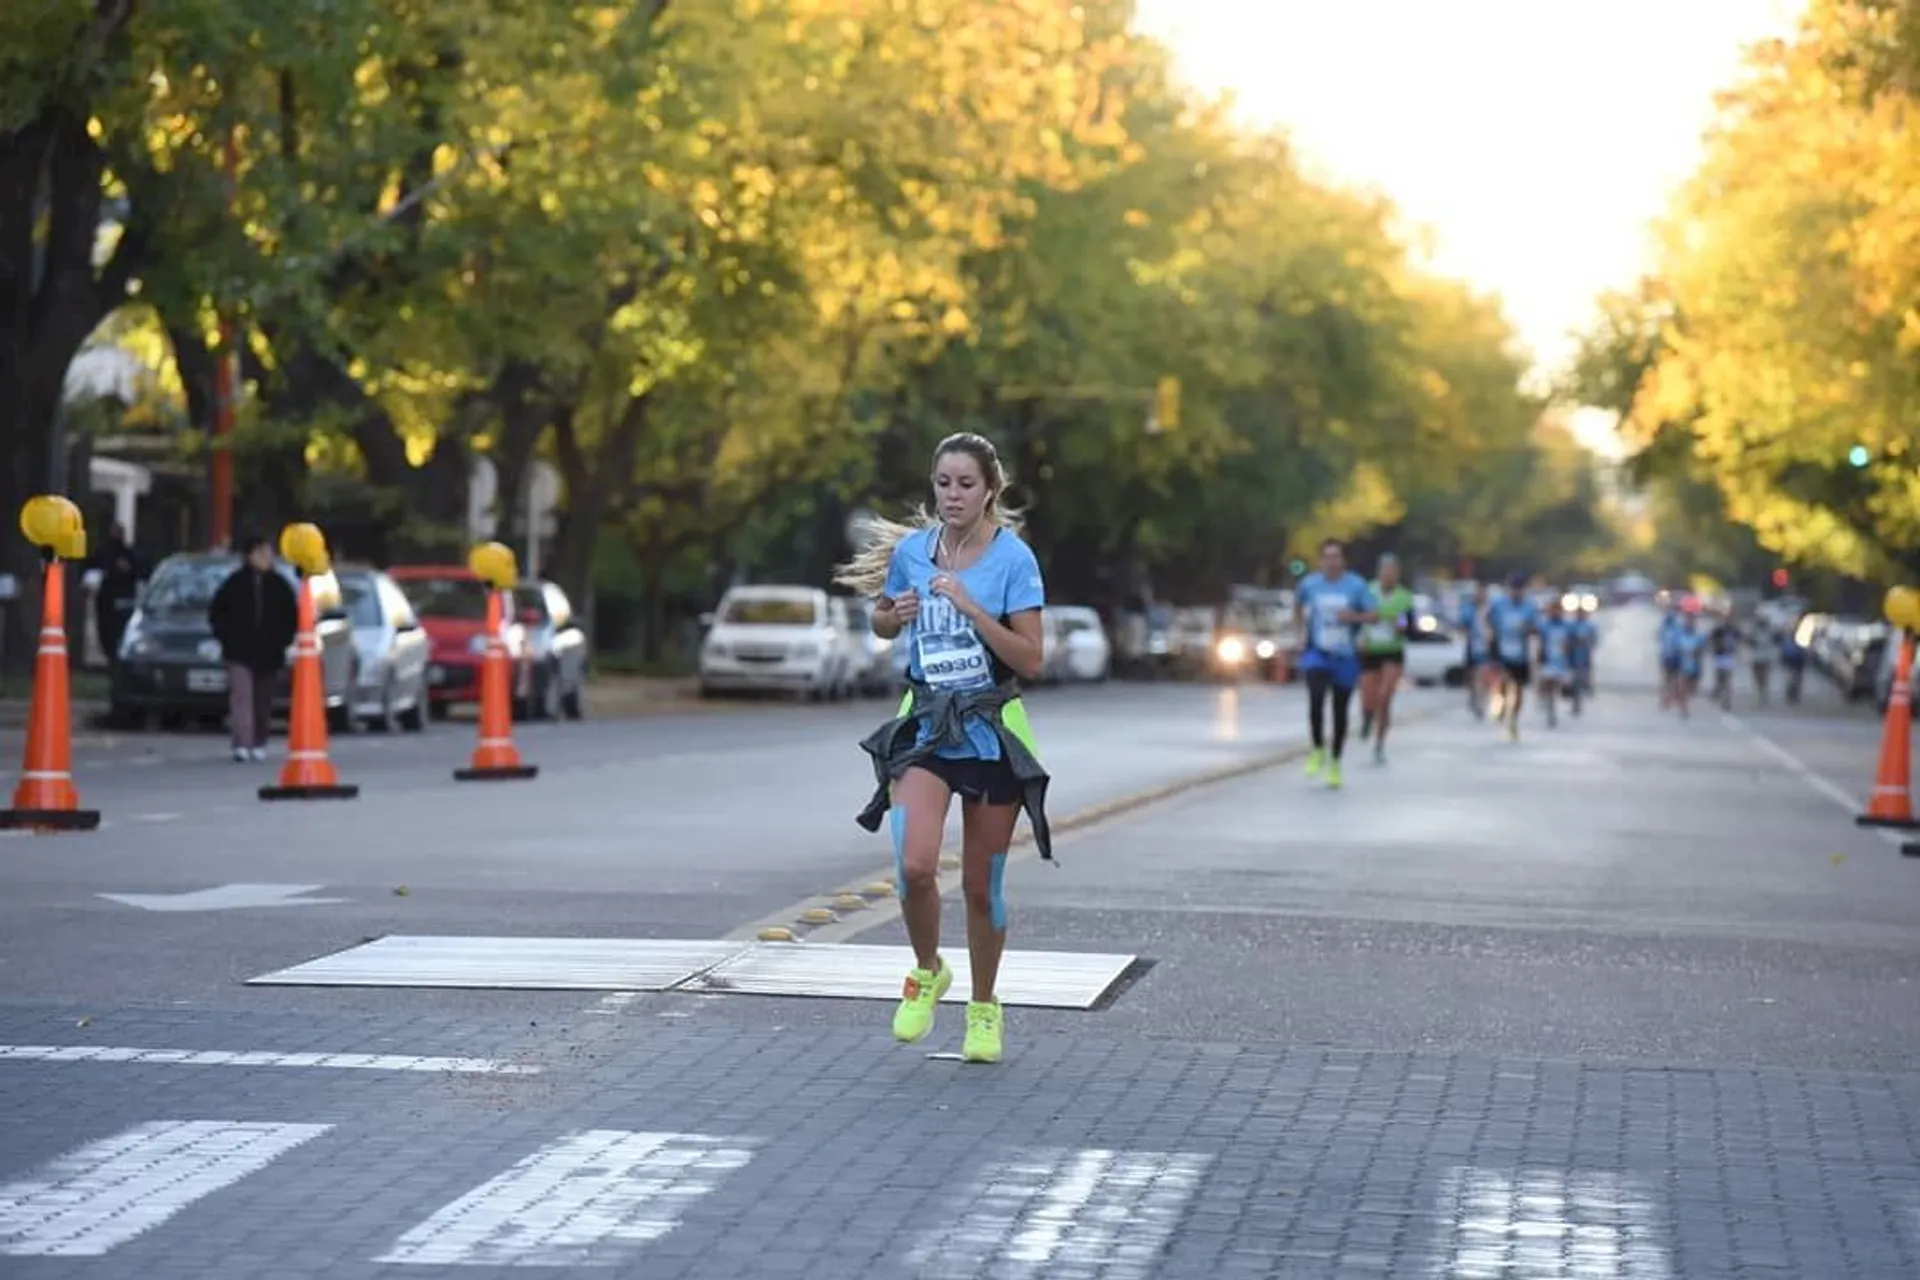 Maratón de Mendoza